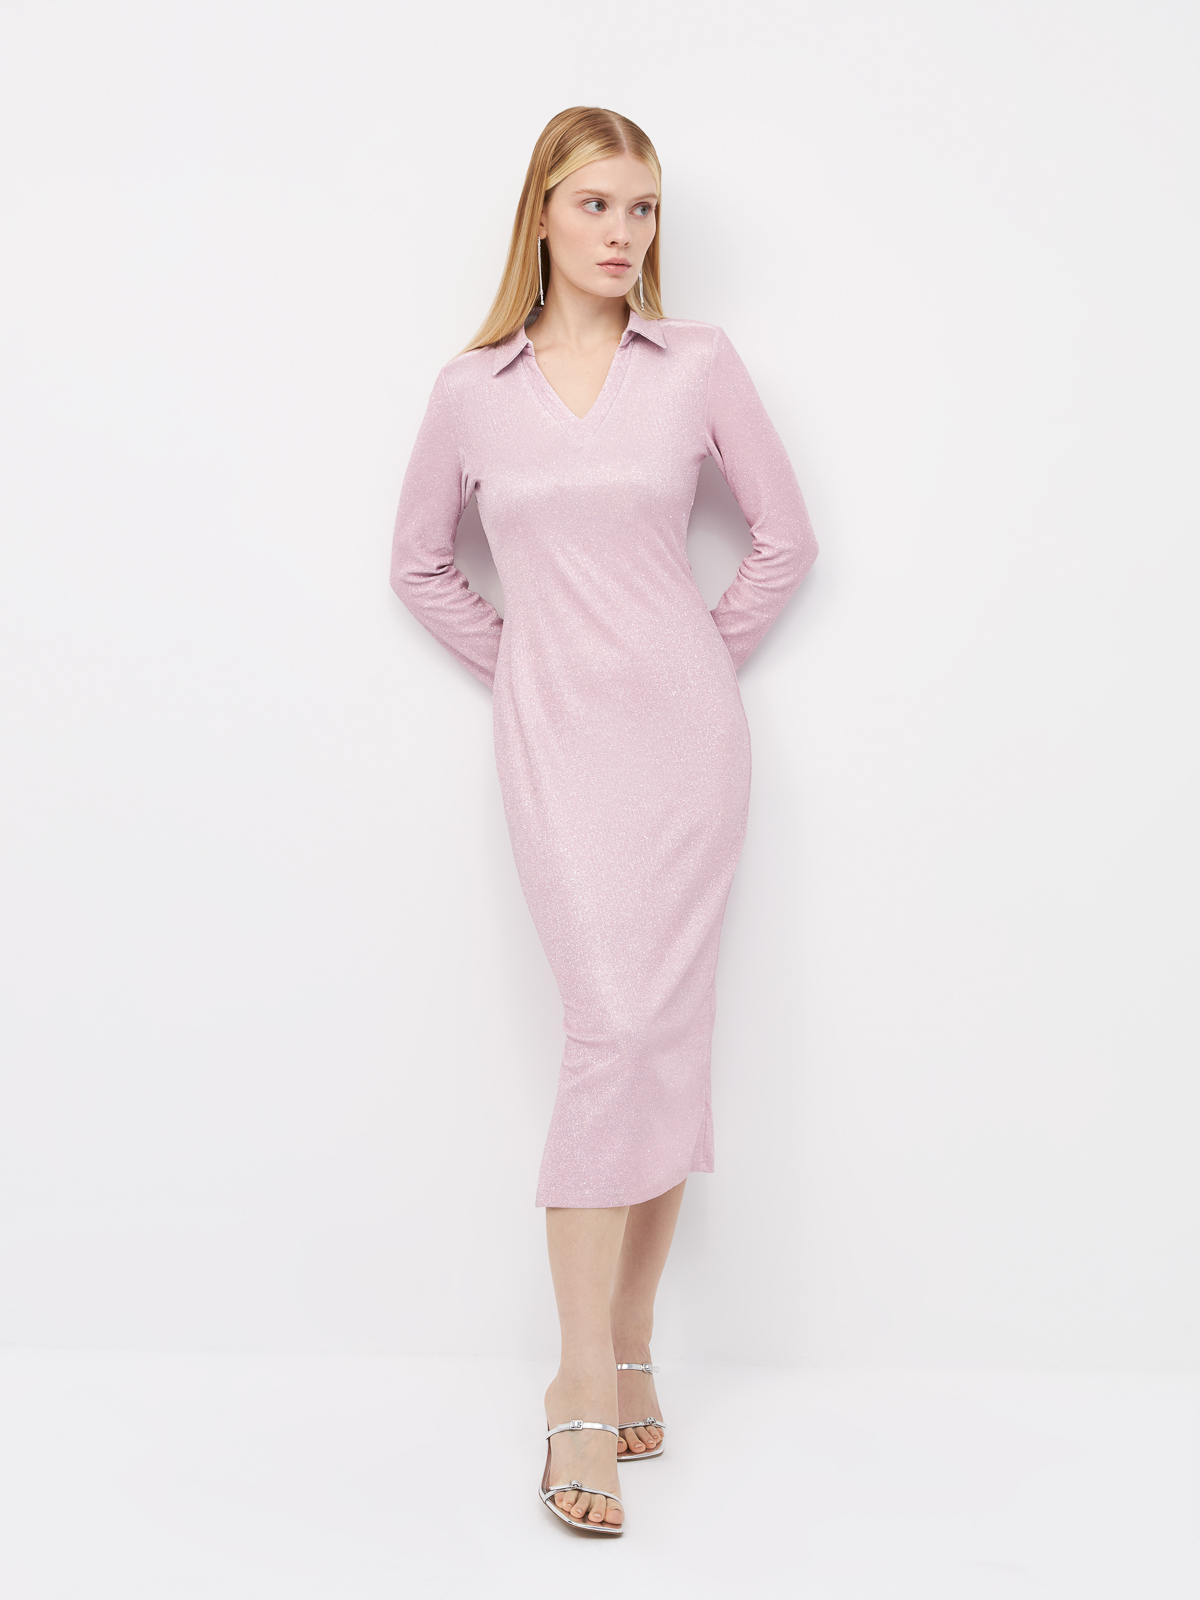 Платье женское Arive ARV-WF-10517-006 розовое M